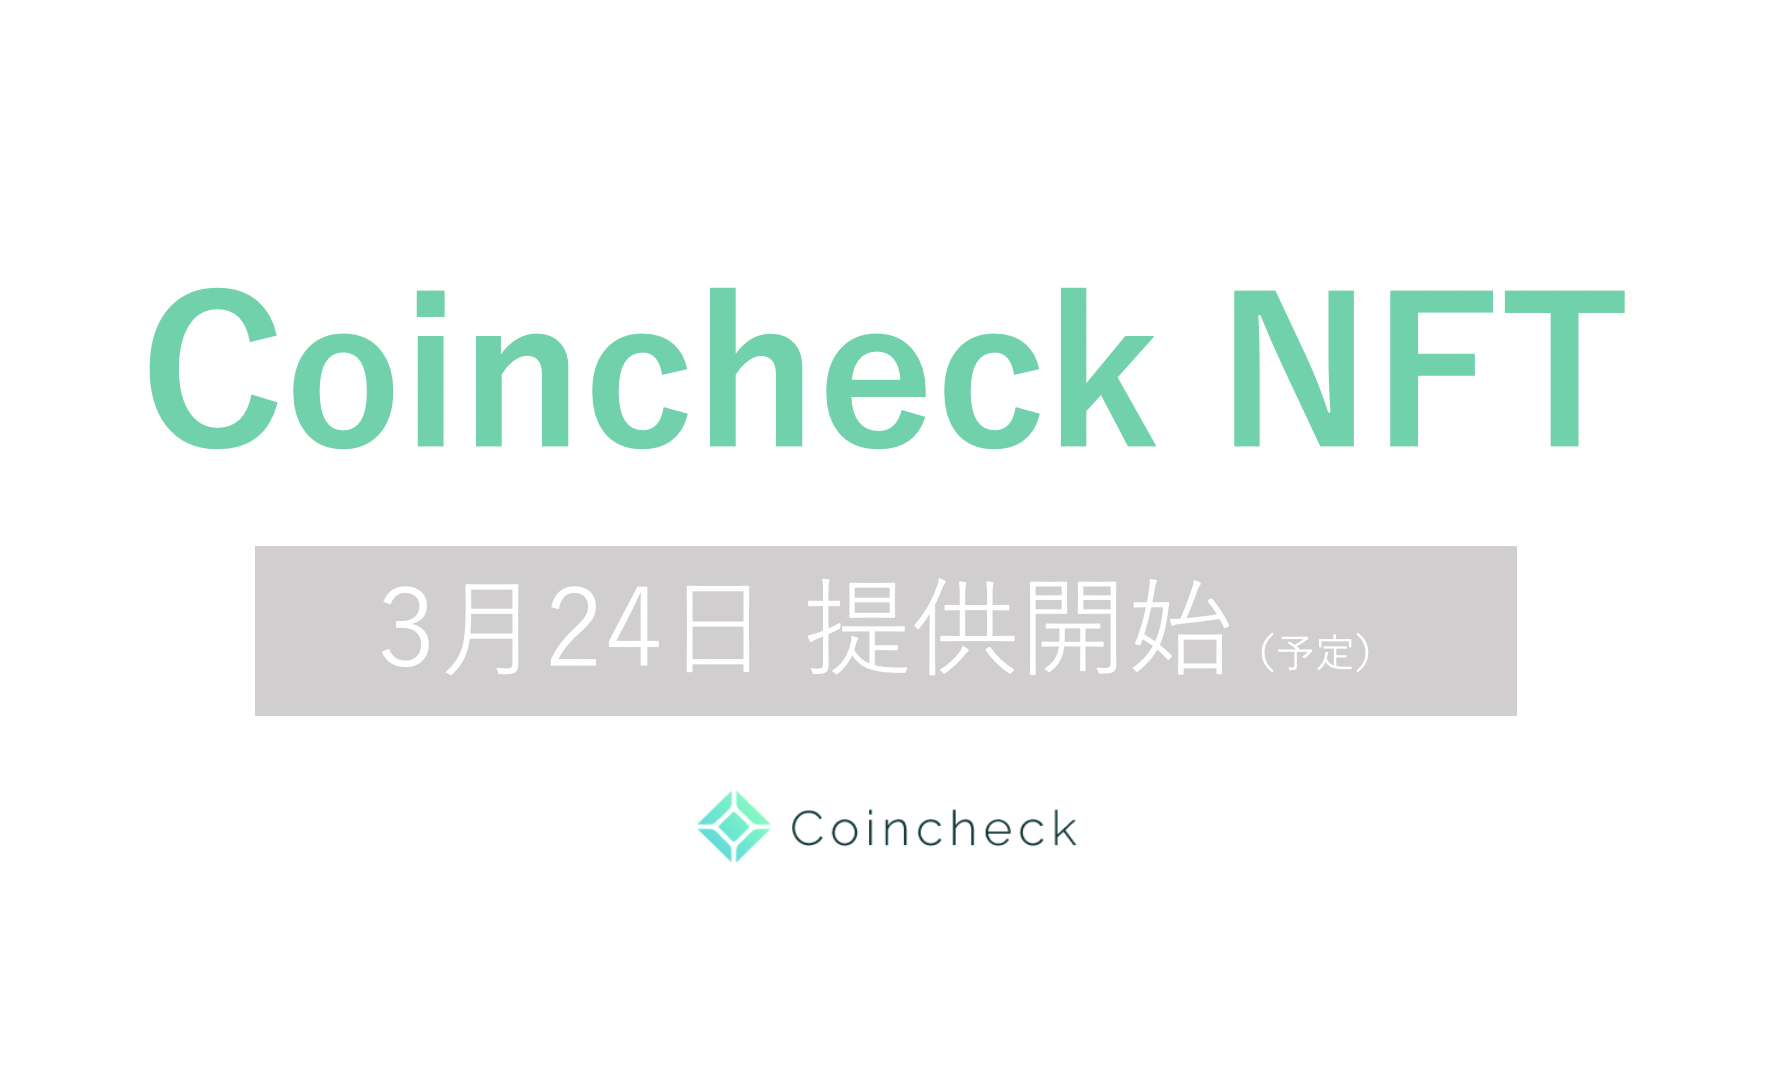 Coincheck Nft B版 3月24日より提供開始 コインチェック株式会社のプレスリリース